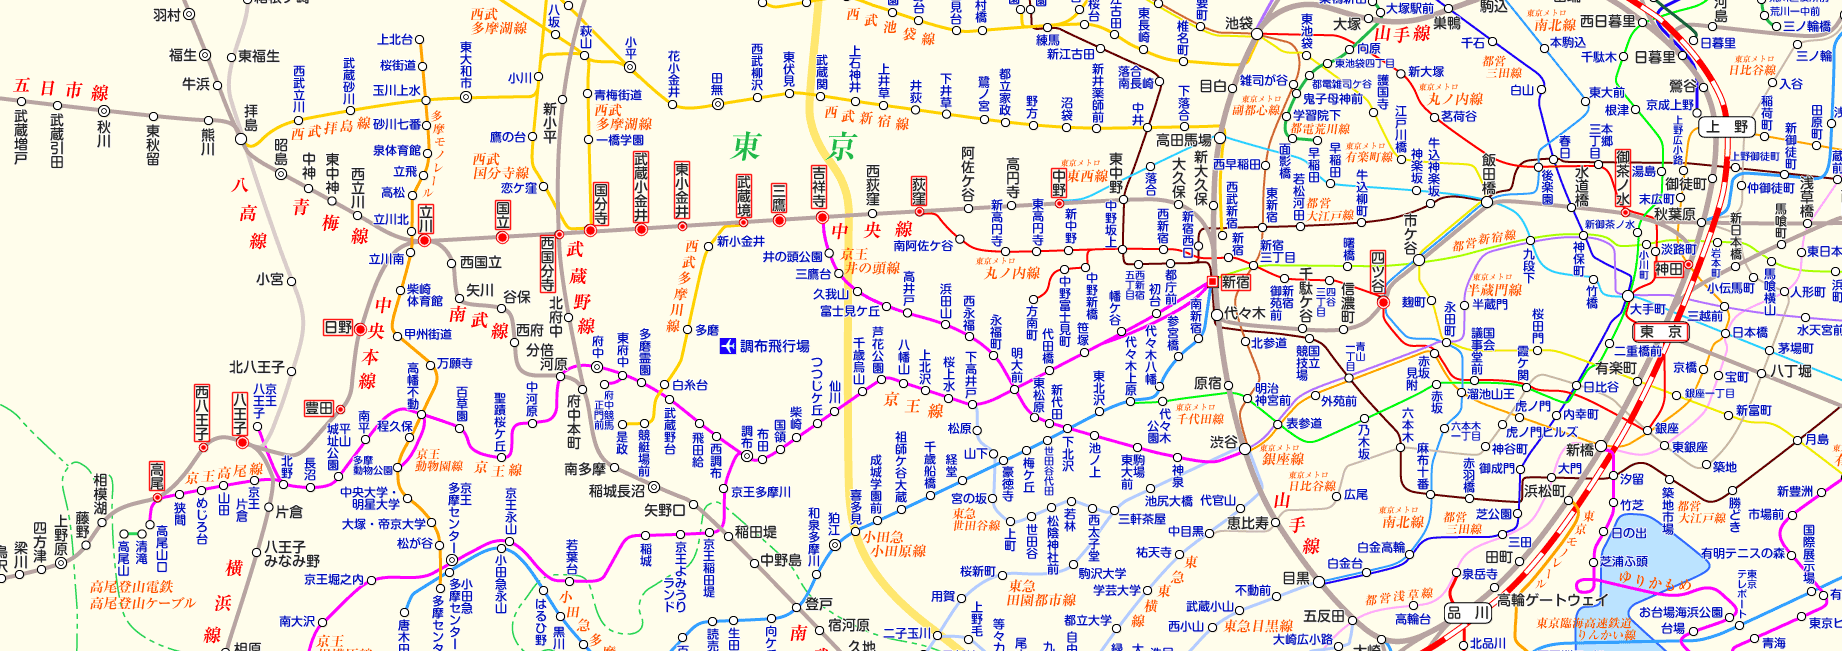 中央線 東京行きの路線図